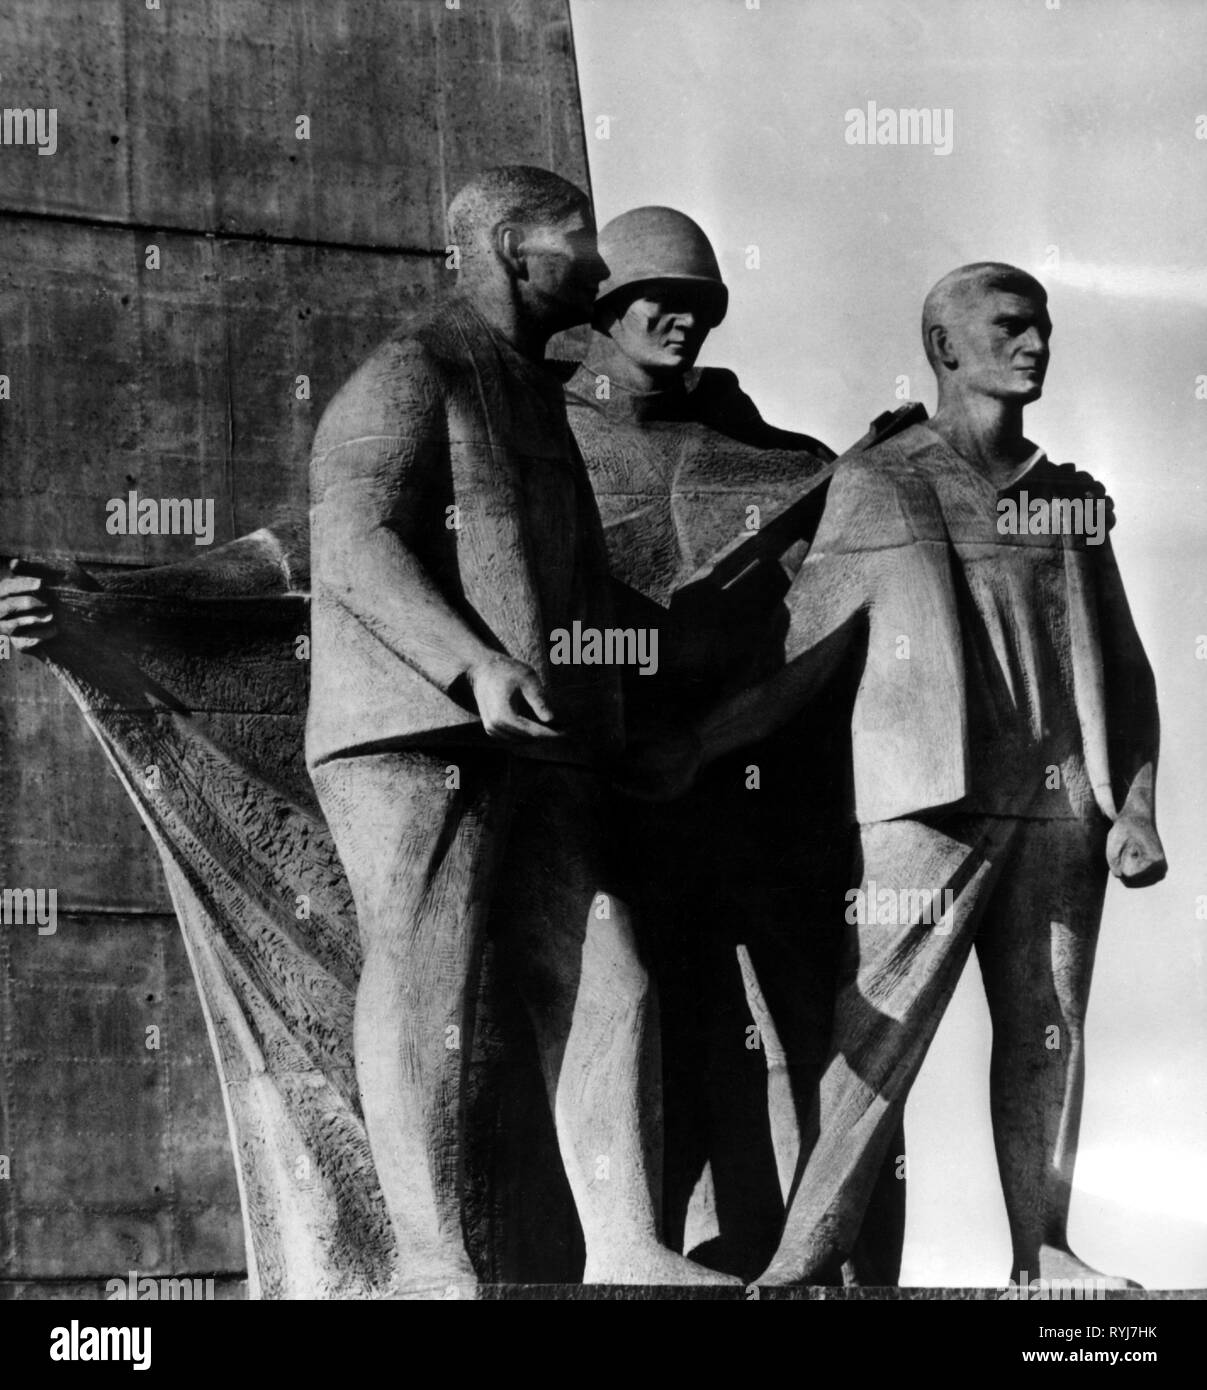 Il nazismo / socialismo nazionale, le forme gravi di criminalità, campo di concentramento, Sachsenhausen-Oranienburg, National Memorial posto della RDT dal 1961, memorial "Befreiung' (liberazione) da rene Graetz, 1965, Additional-Rights-Clearance-Info-Not-Available Foto Stock